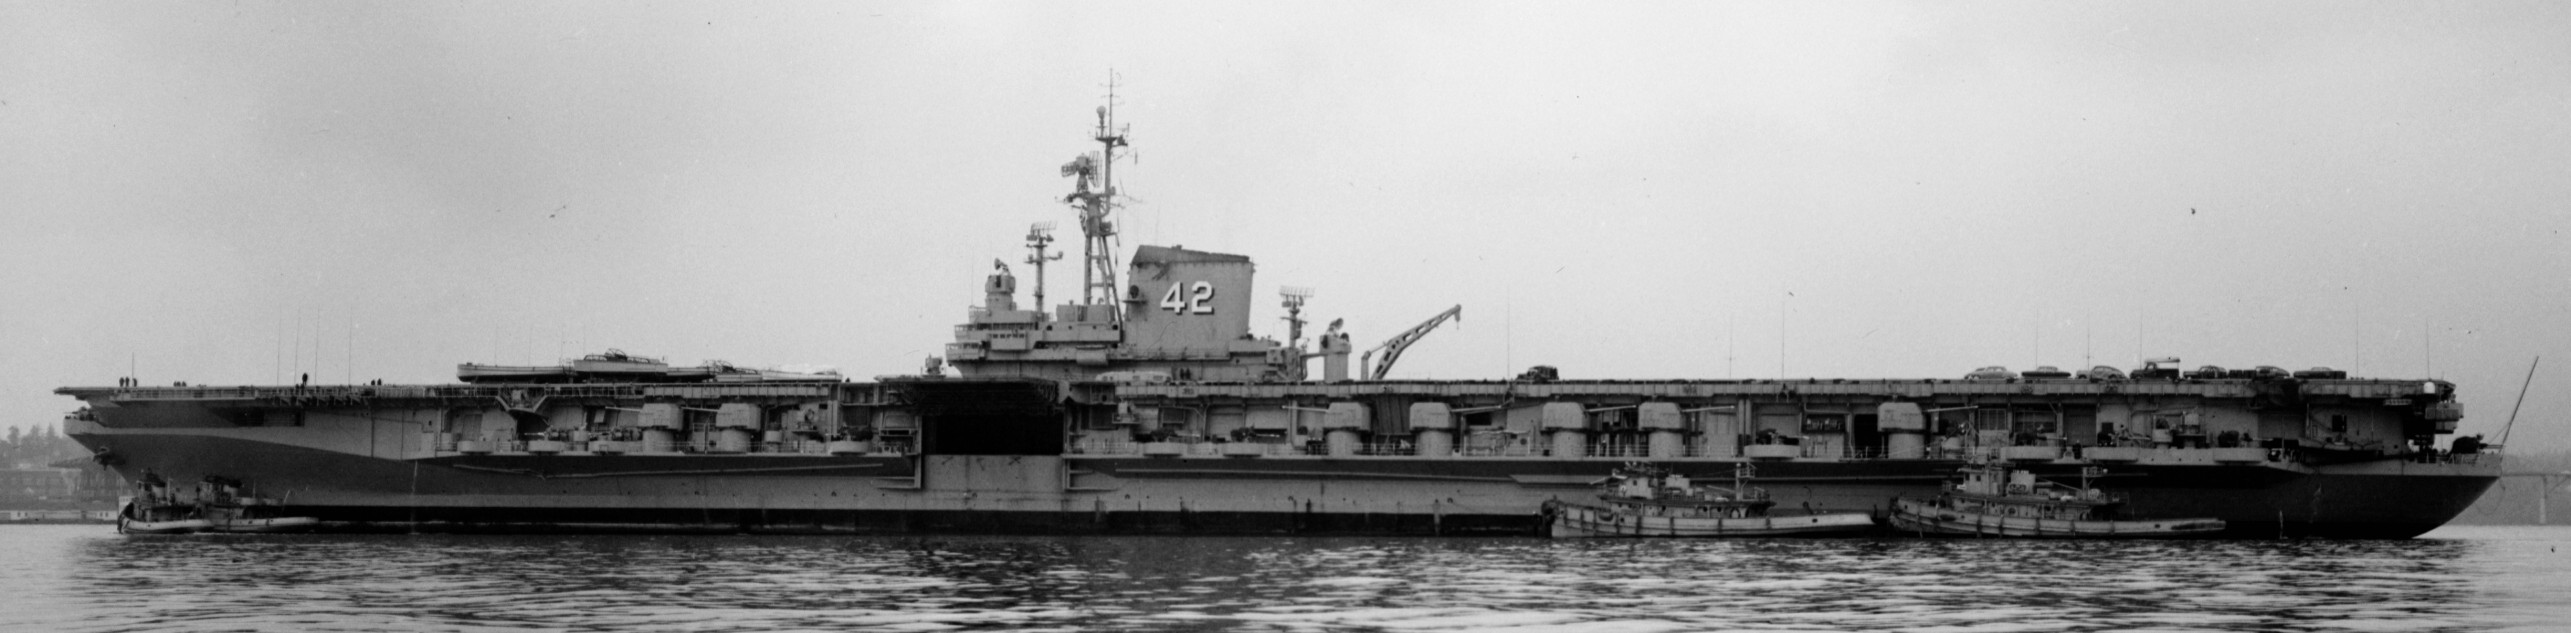 cva-42 uss franklin d. roosevelt midway class aircraft carrier 52